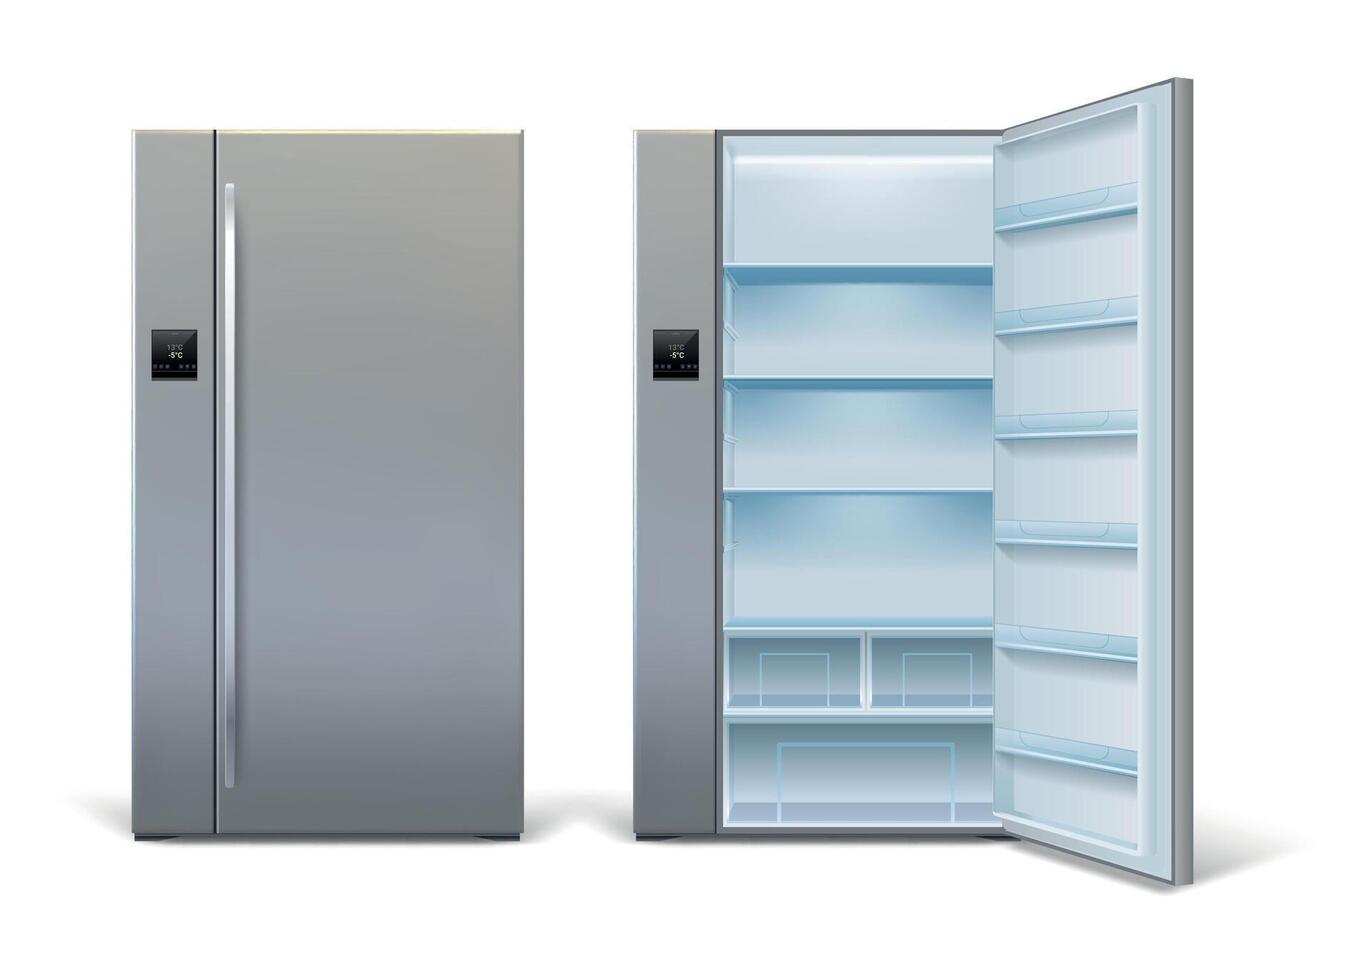 realistico Aperto e chiuso moderno frigorifero modello con scaffali. vuoto largo frigo con sensore pannello. casa cucina frigorifero vettore impostato